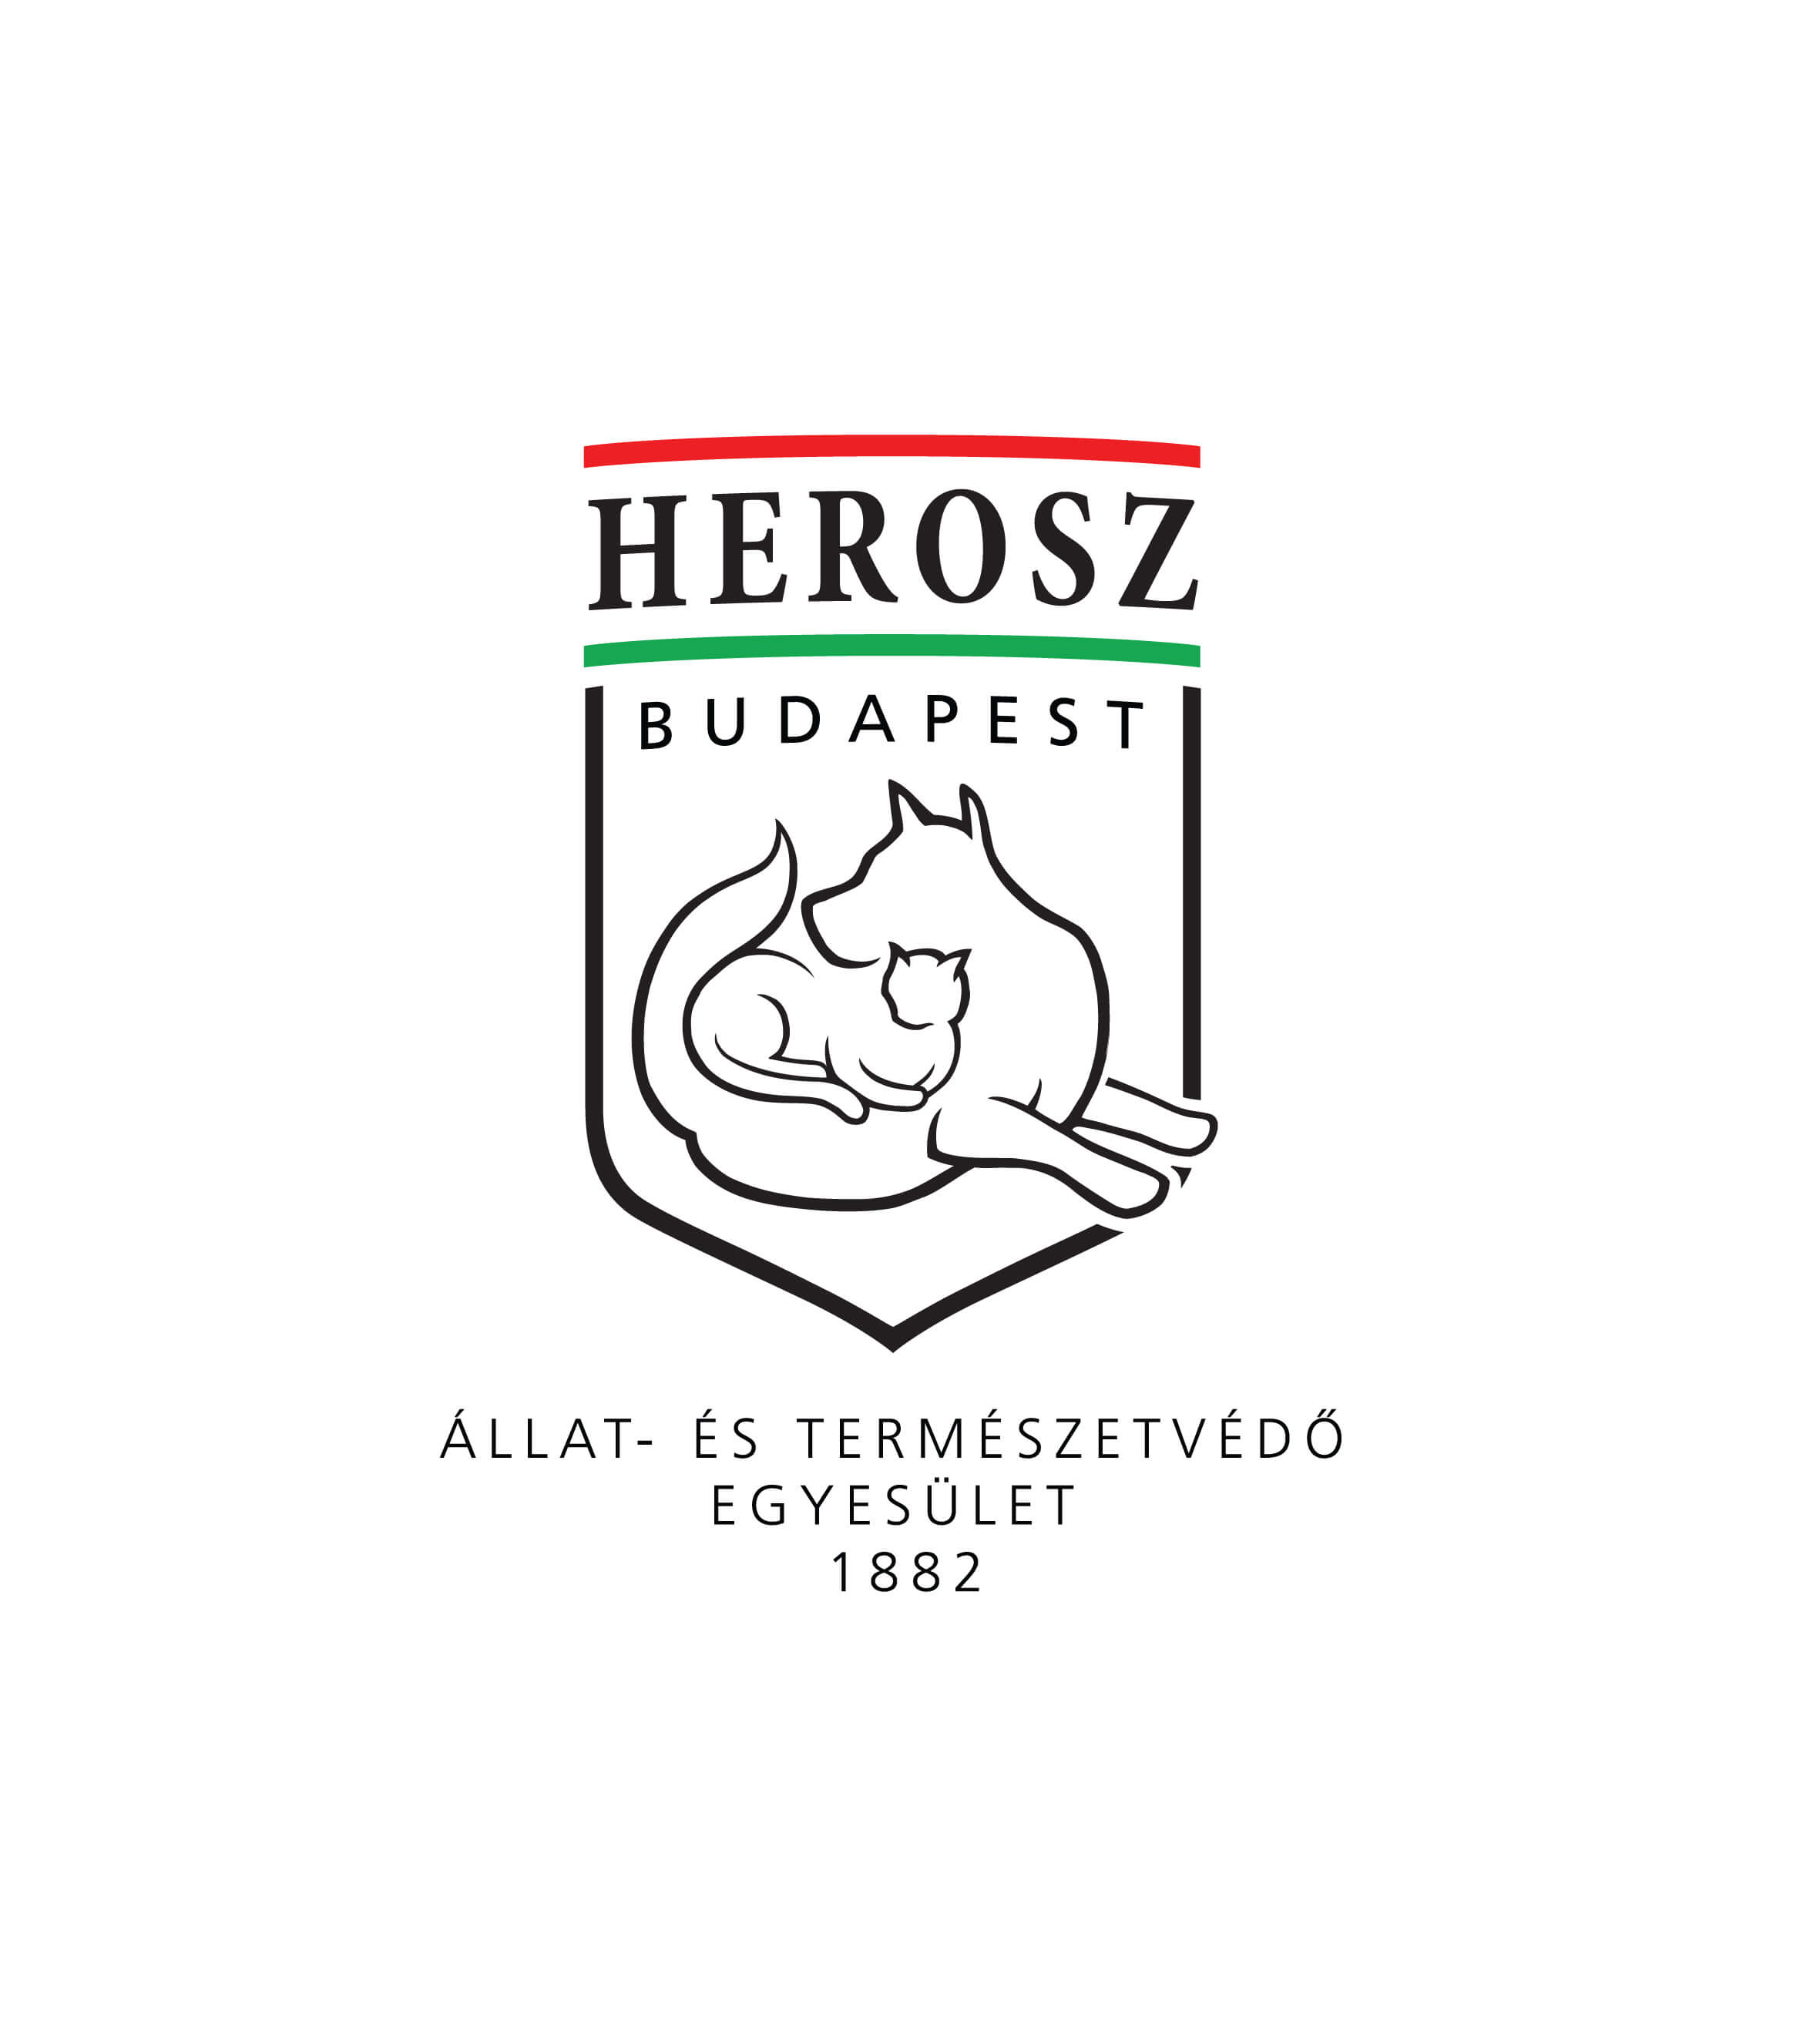 Herman Ottó Magyar Országos Állat- és Természetvédő Egyesület Budapesti Állatotthona